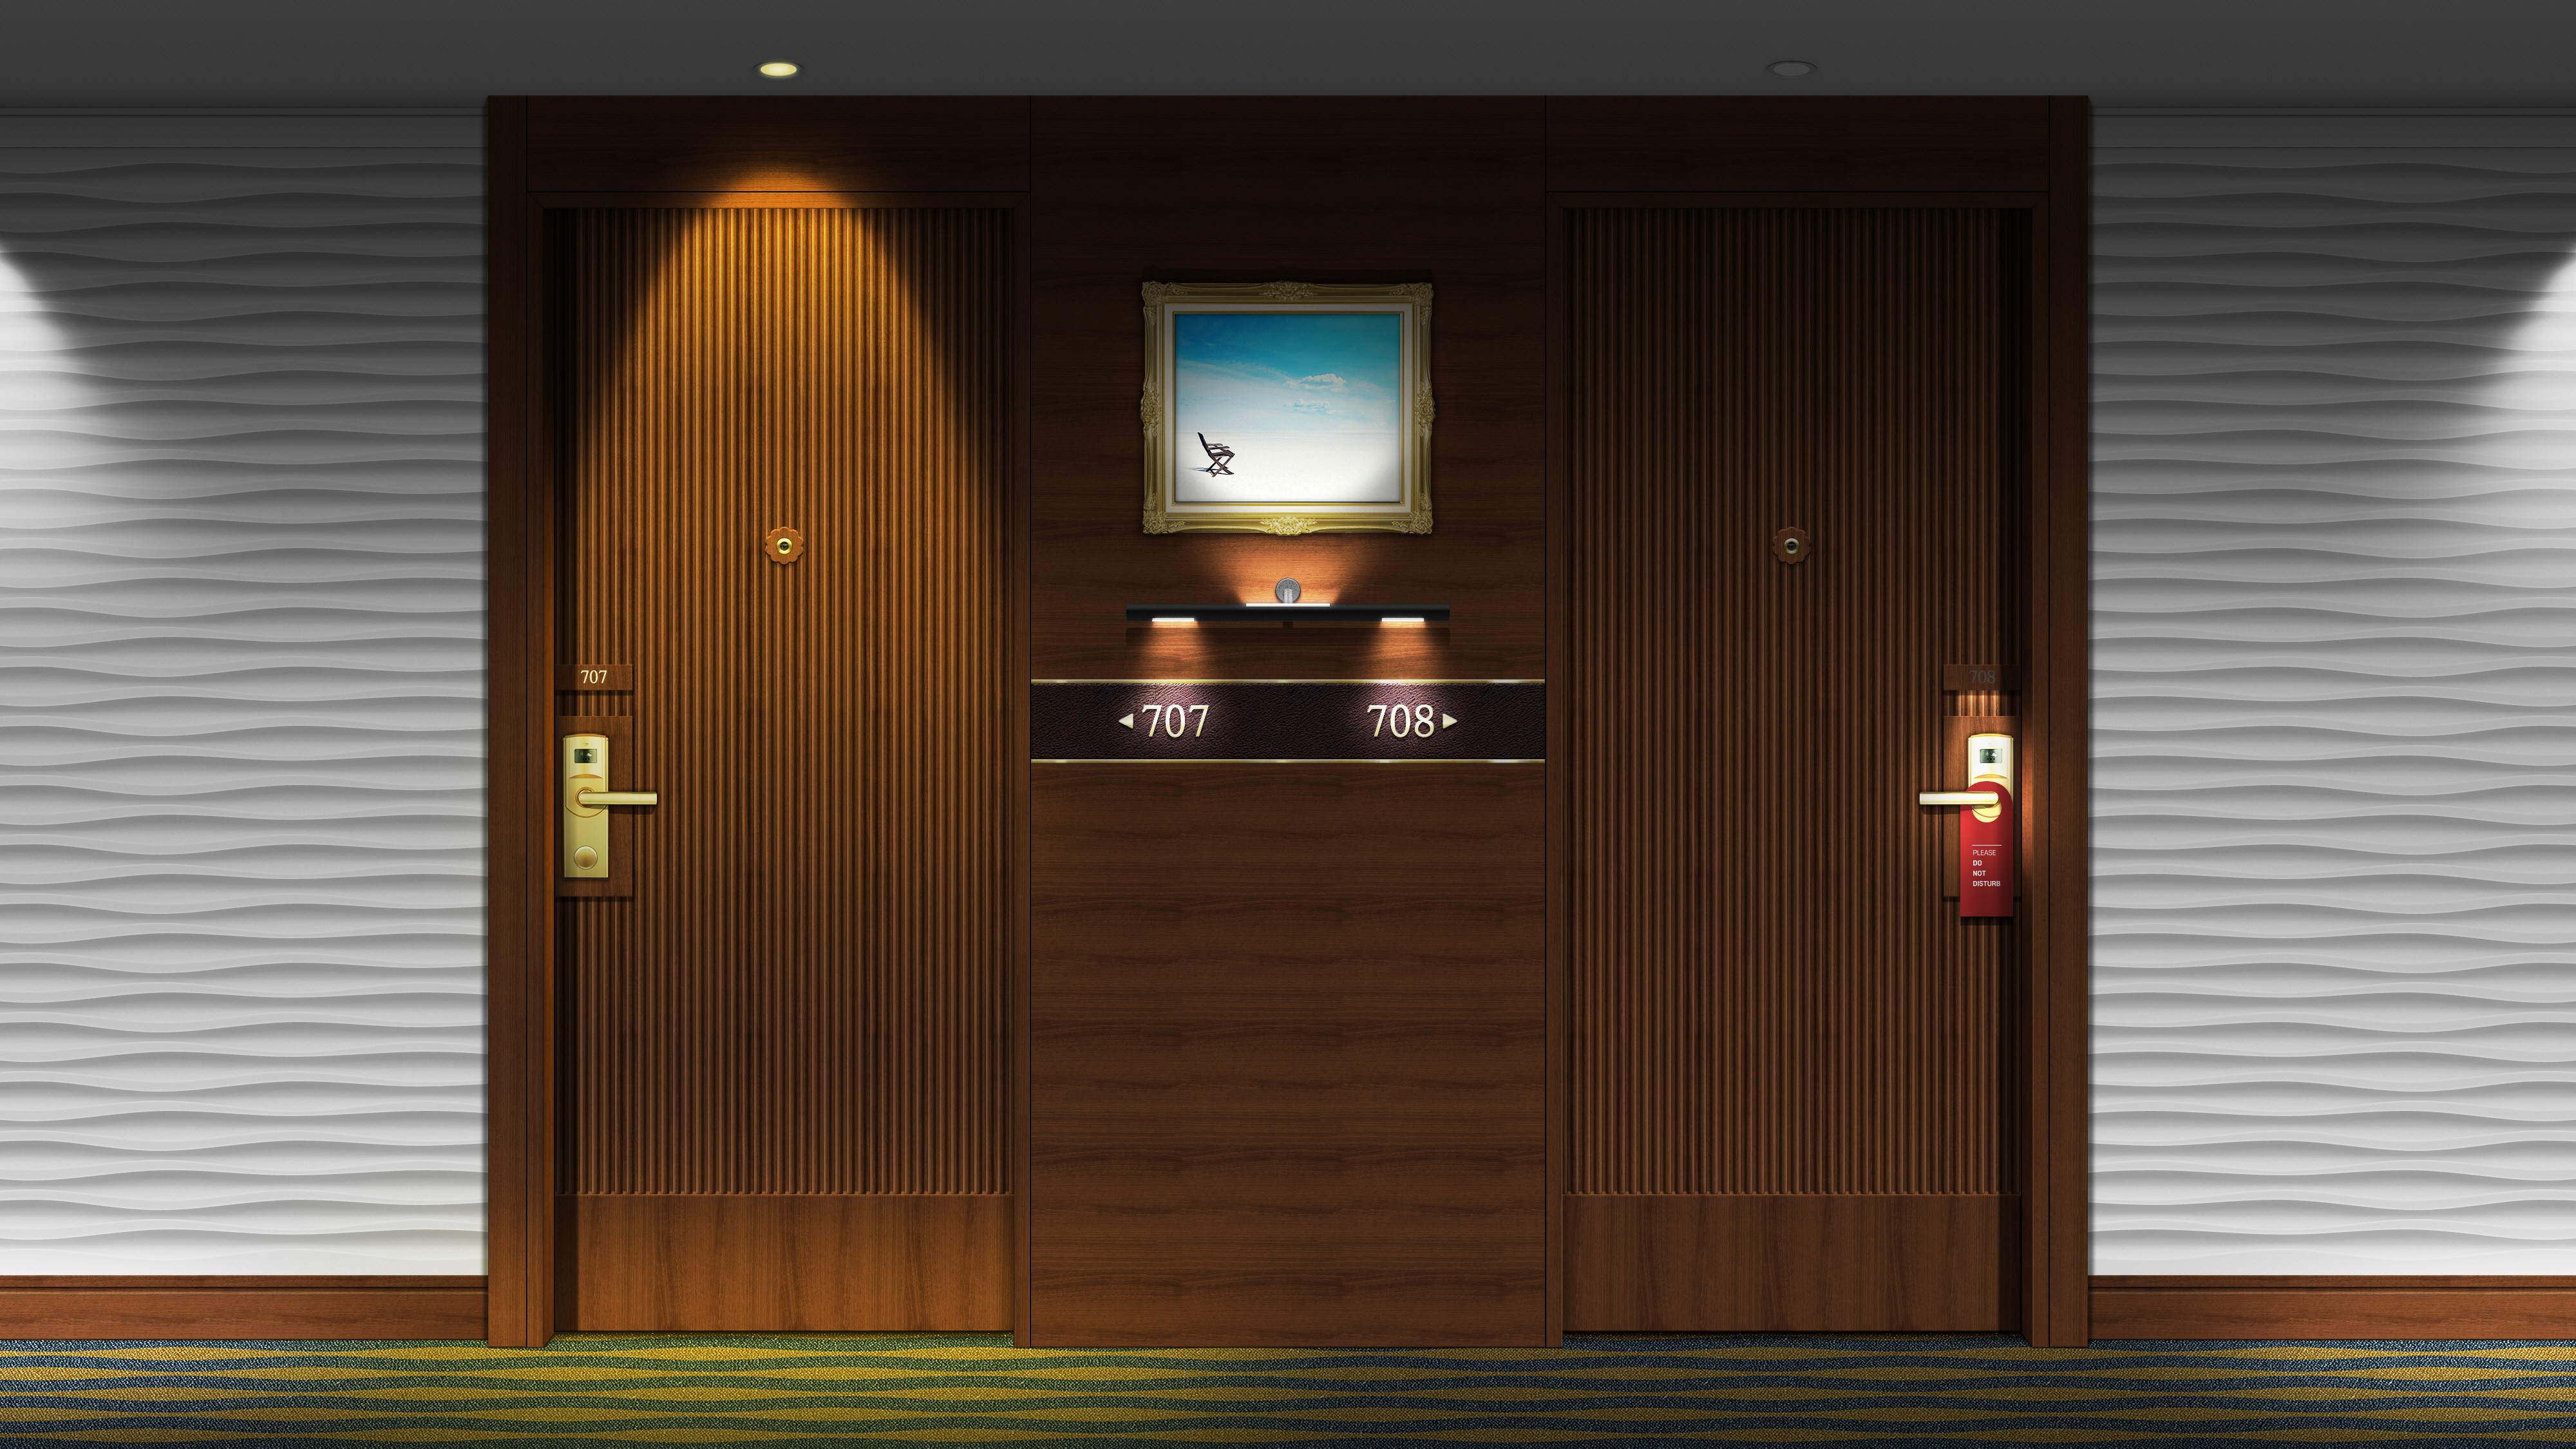 Hotel Hallway Indoors Numbers Door Digital Art Render 4000x2250